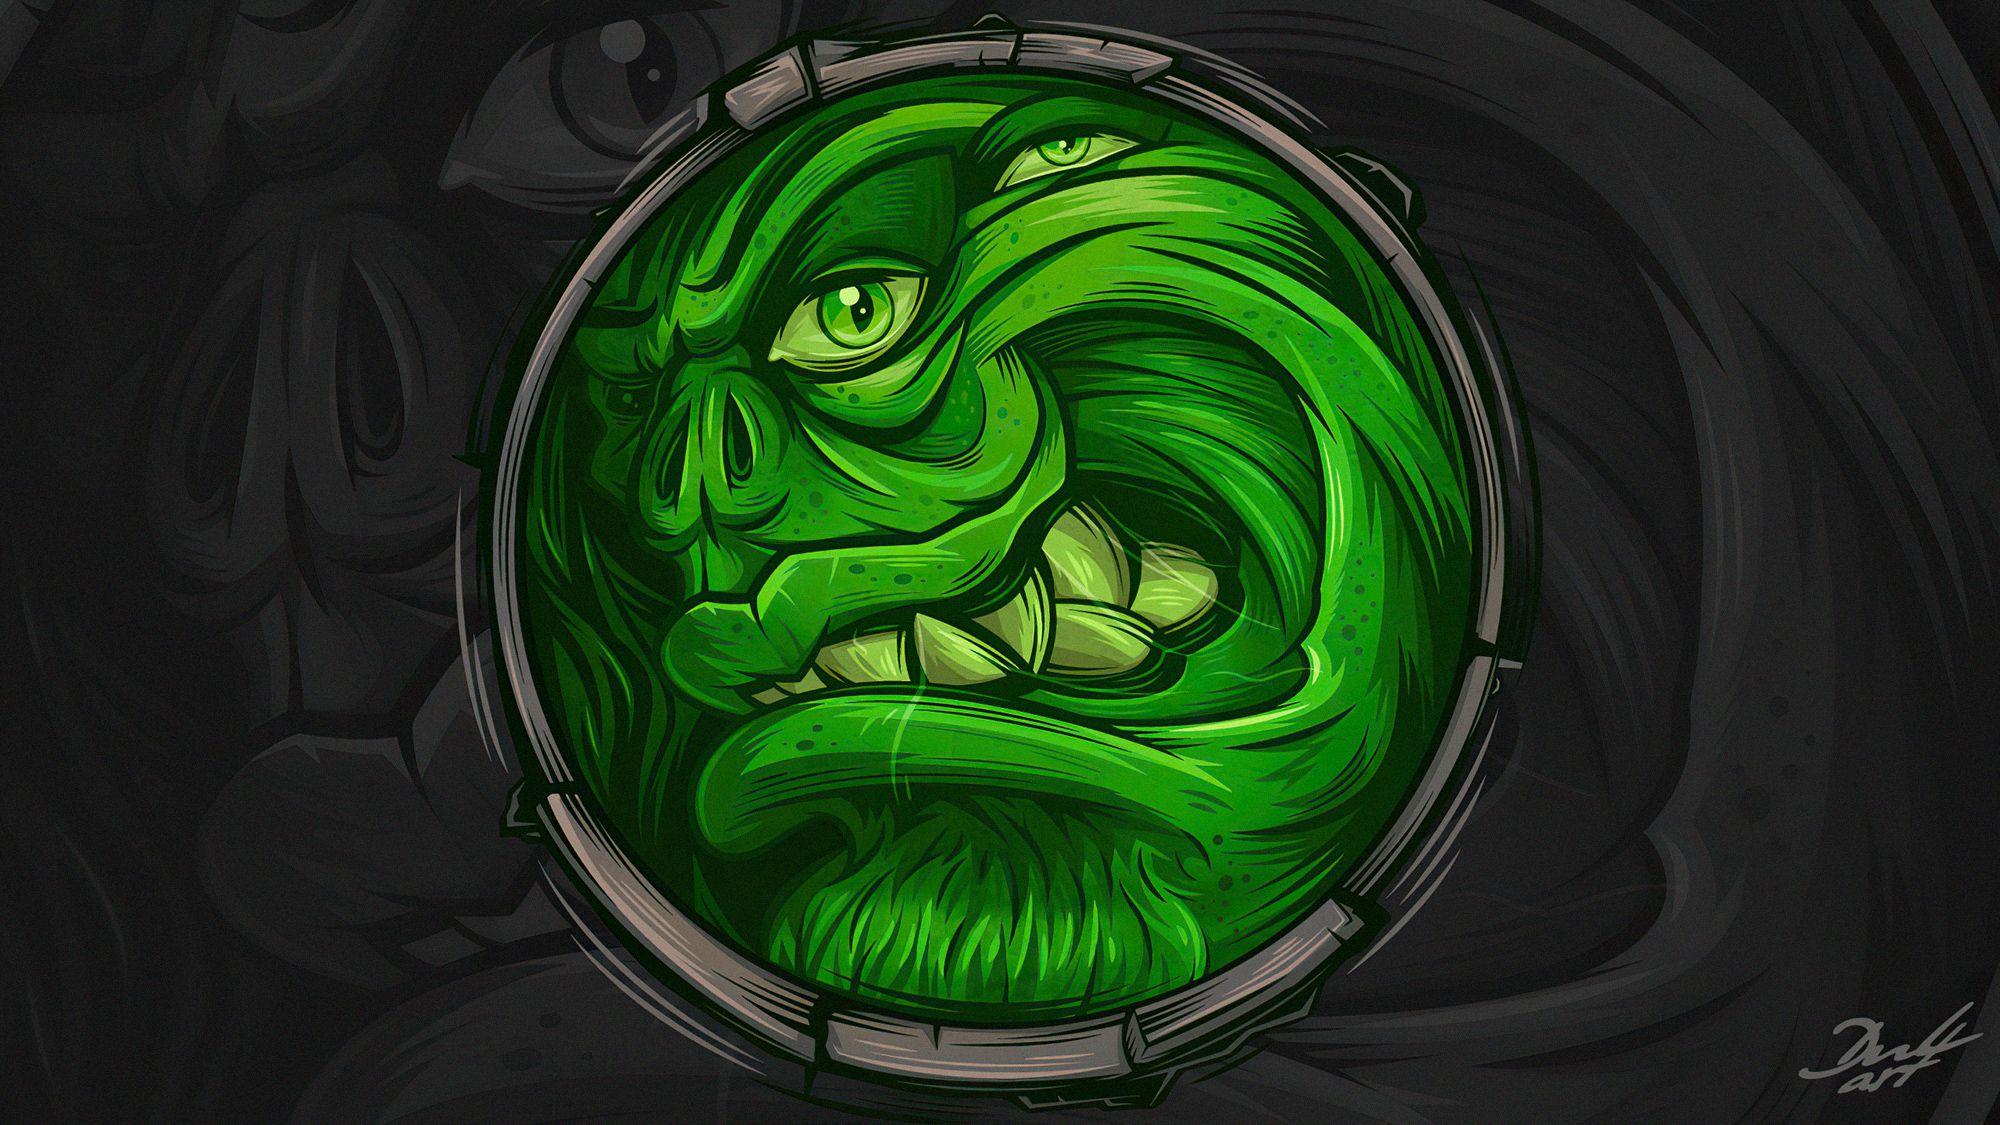 2000x1125 I See You Green Monster, Nghệ sĩ HD, Hình nền 4k, Hình ảnh, Bối cảnh, Hình ảnh và Hình ảnh